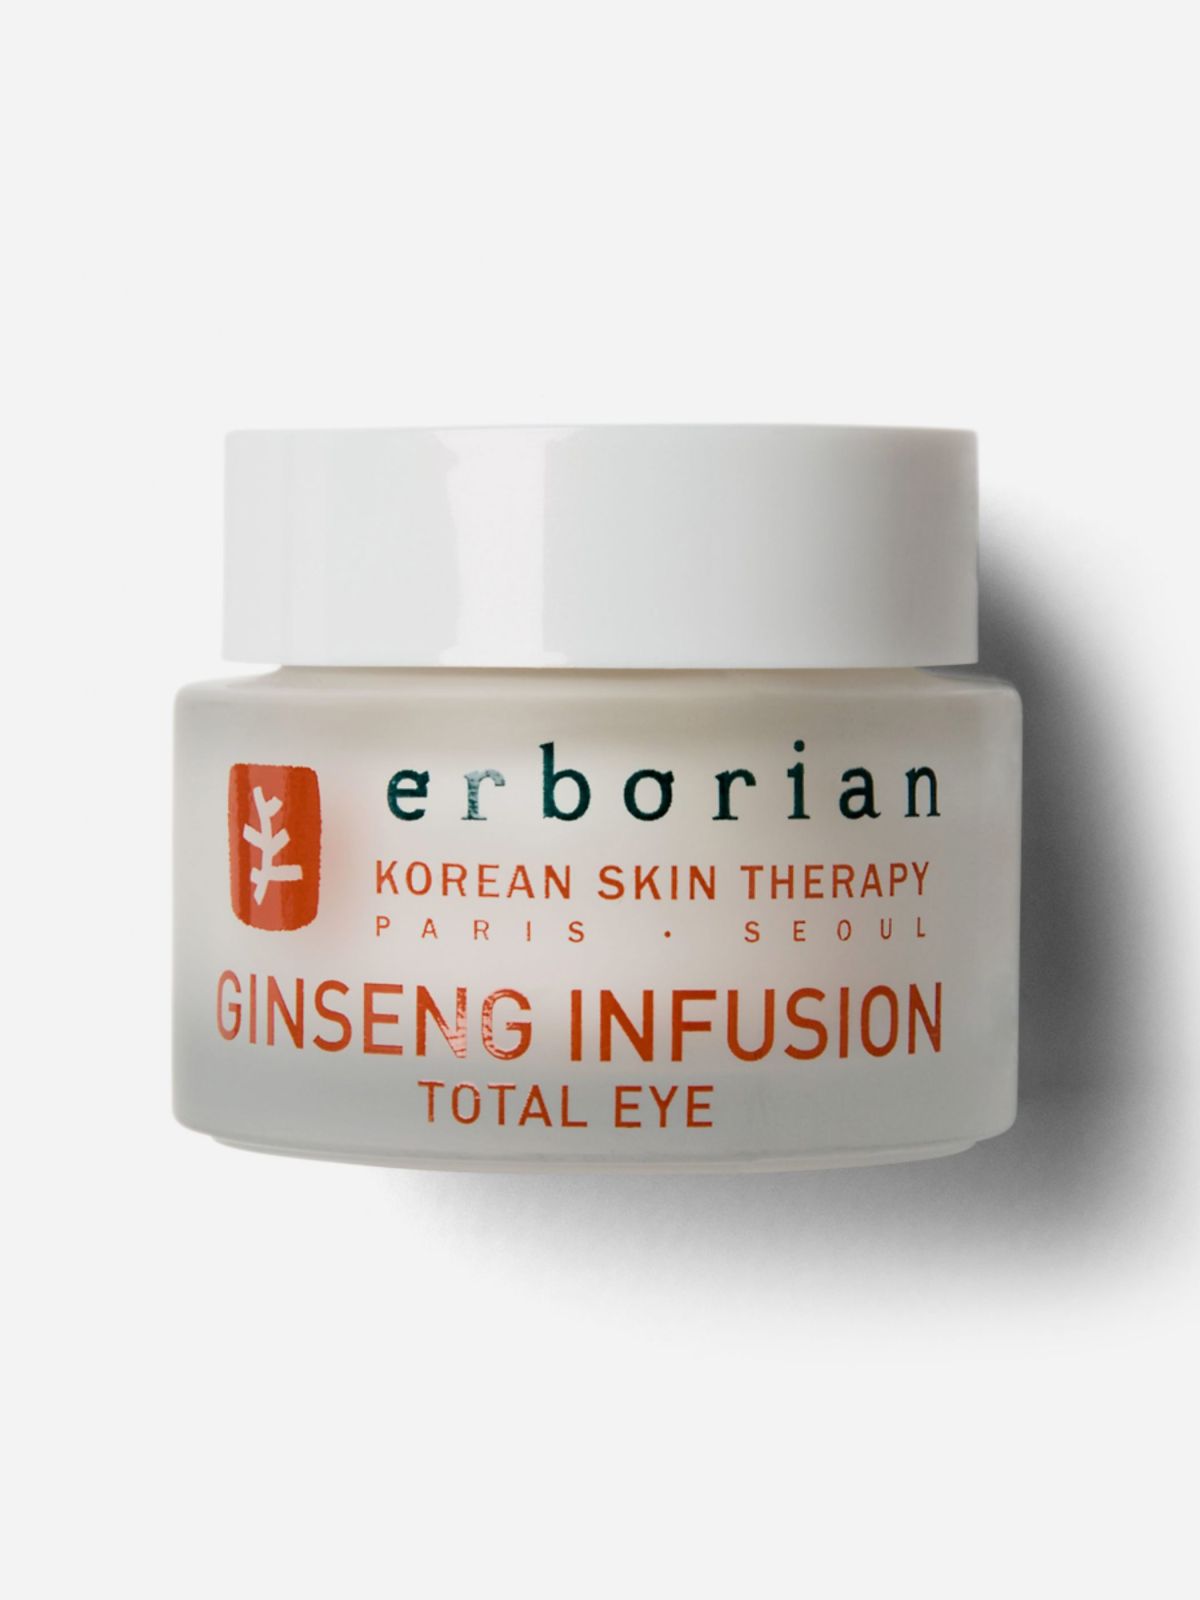  קרם עיניים פעיל ג'ינסנג Ginseng Eye Infusion של ERBORIAN